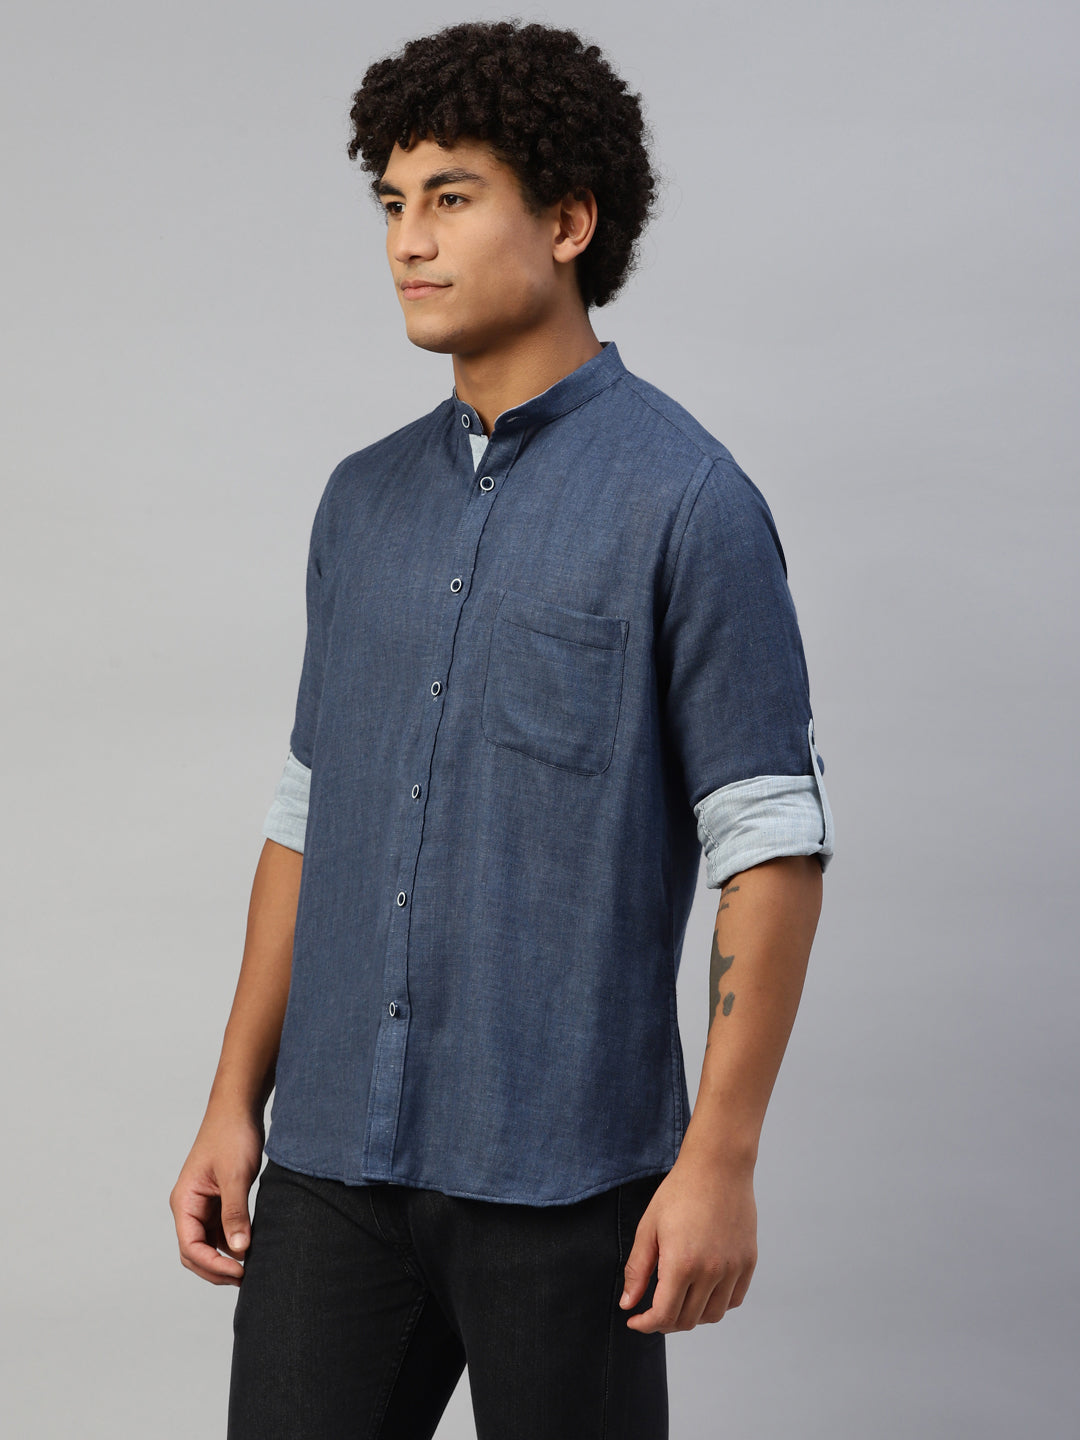 Don Vino Men's Blue Solid Regular Fit Full Sleeves Shirt